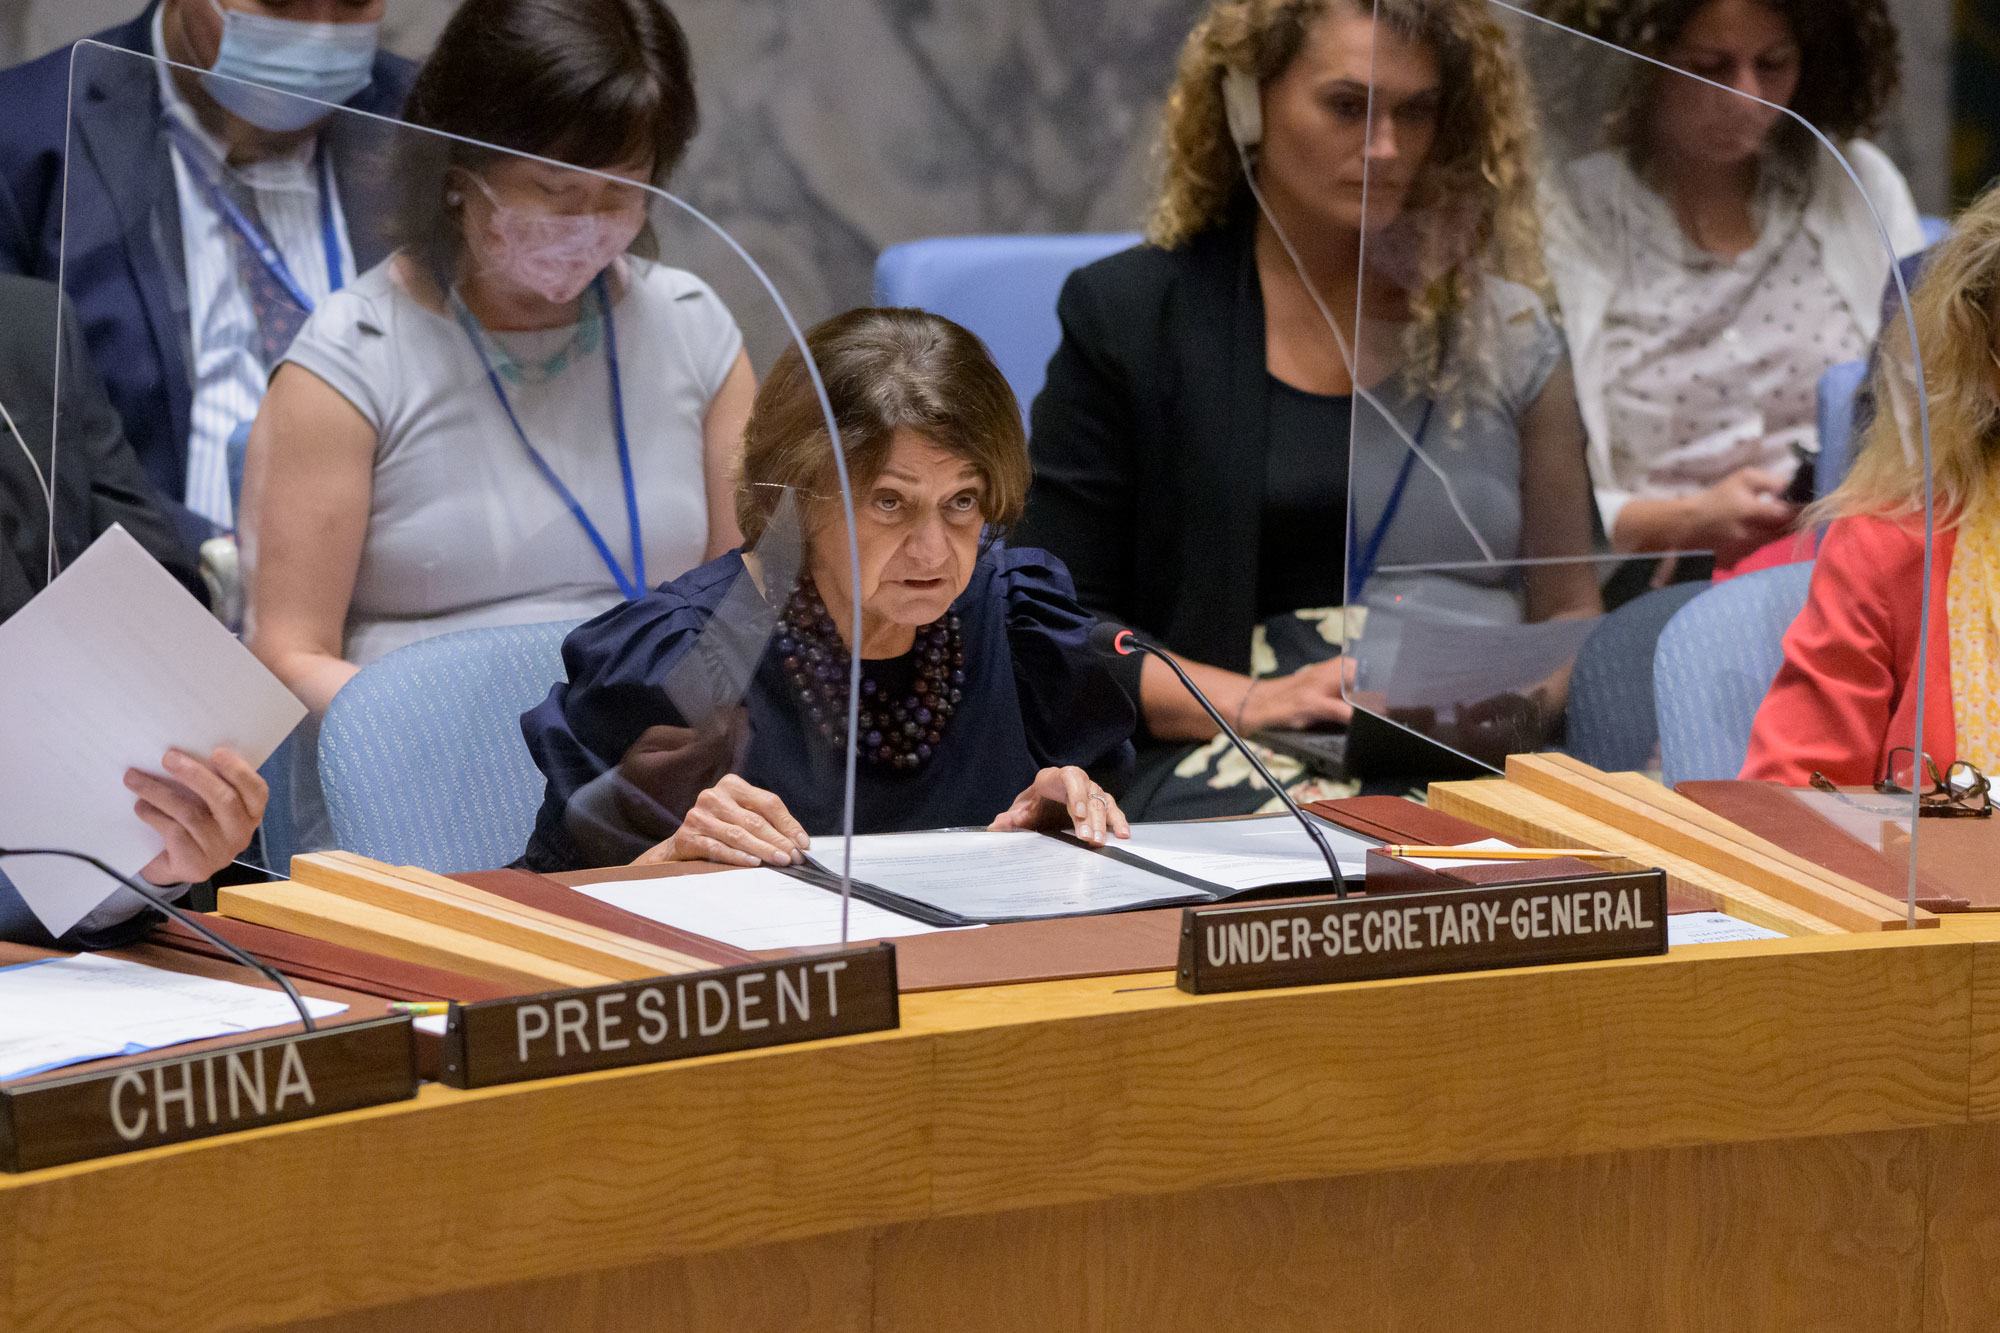 روزماري ديكارلو، وكيلة الأمين العام للشؤون السياسية وبناء السلام، تخاطب مجلس الأمن في جلسته بشأن التهديدات للسلام والأمن الدوليين.